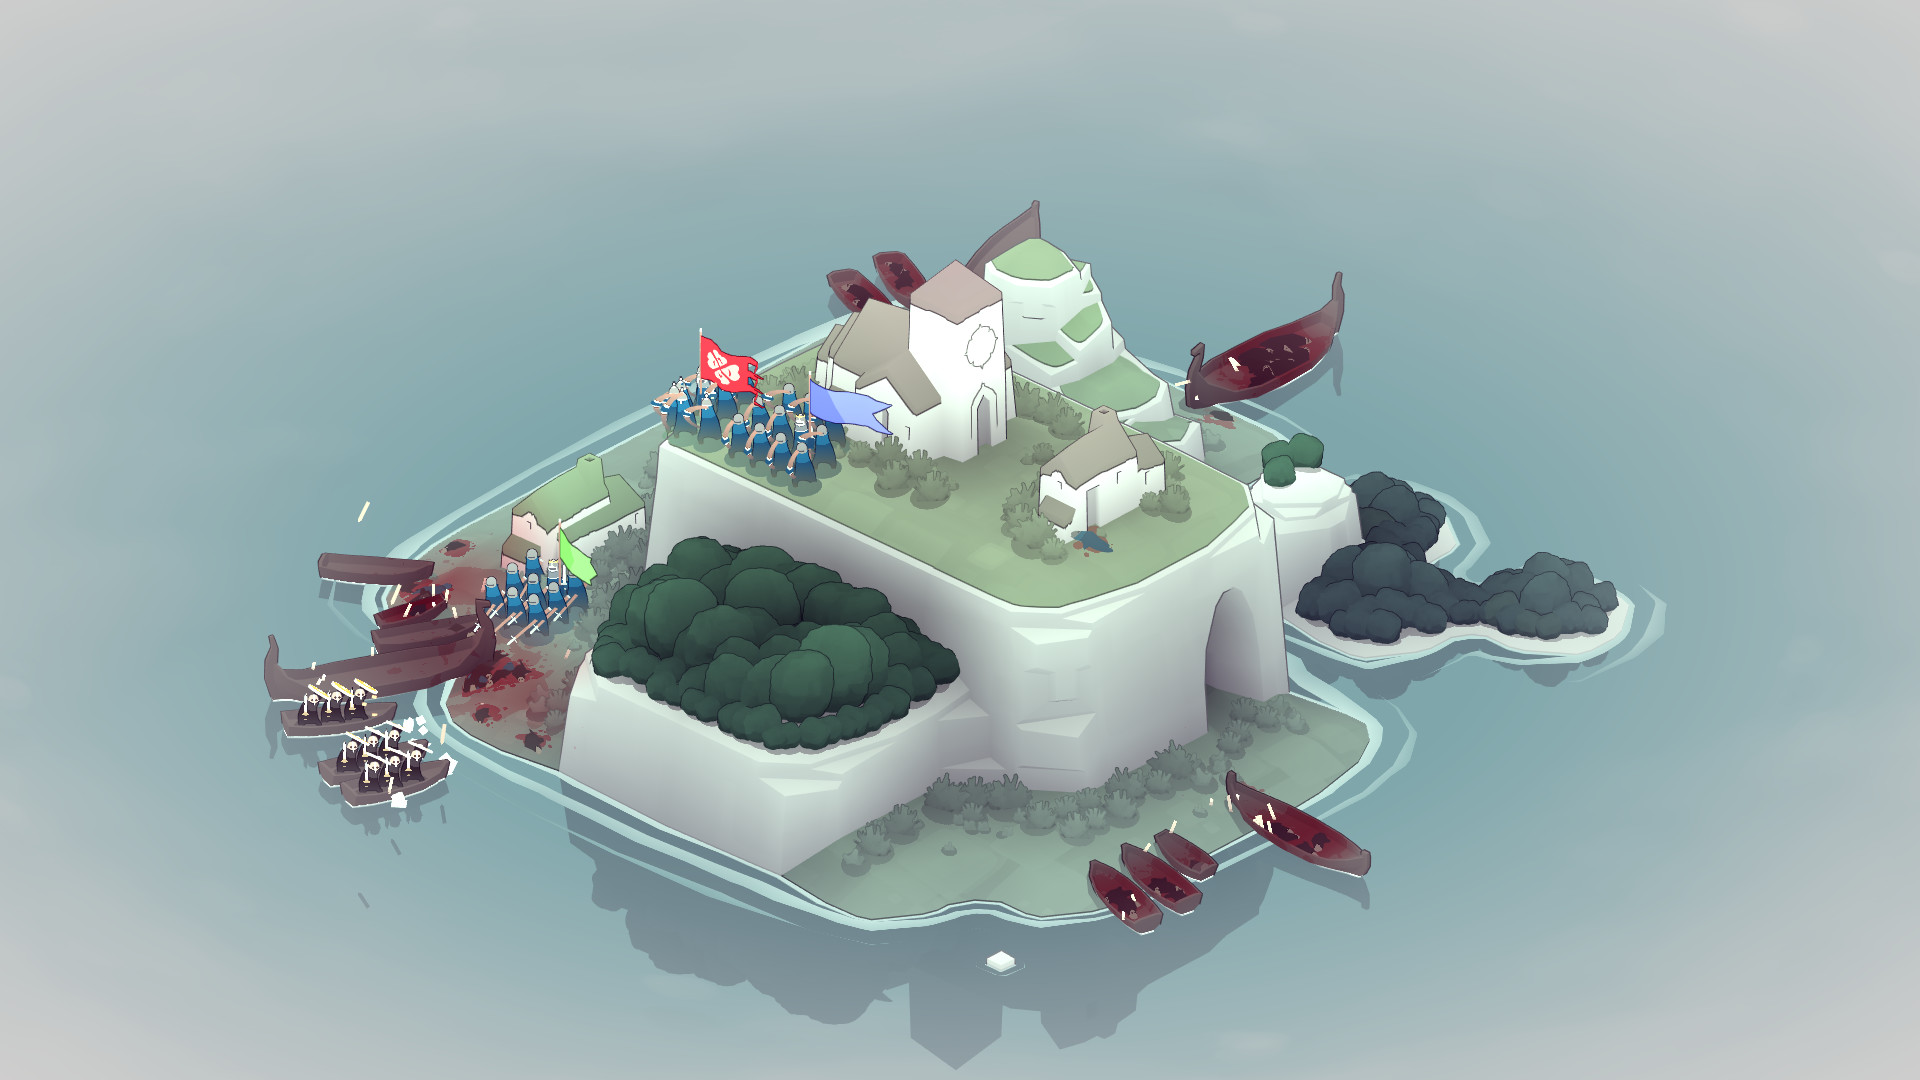 Beste mobile strategispill: Bad North. Bildet viser en øy med forskjellige grupper av mennesker på den